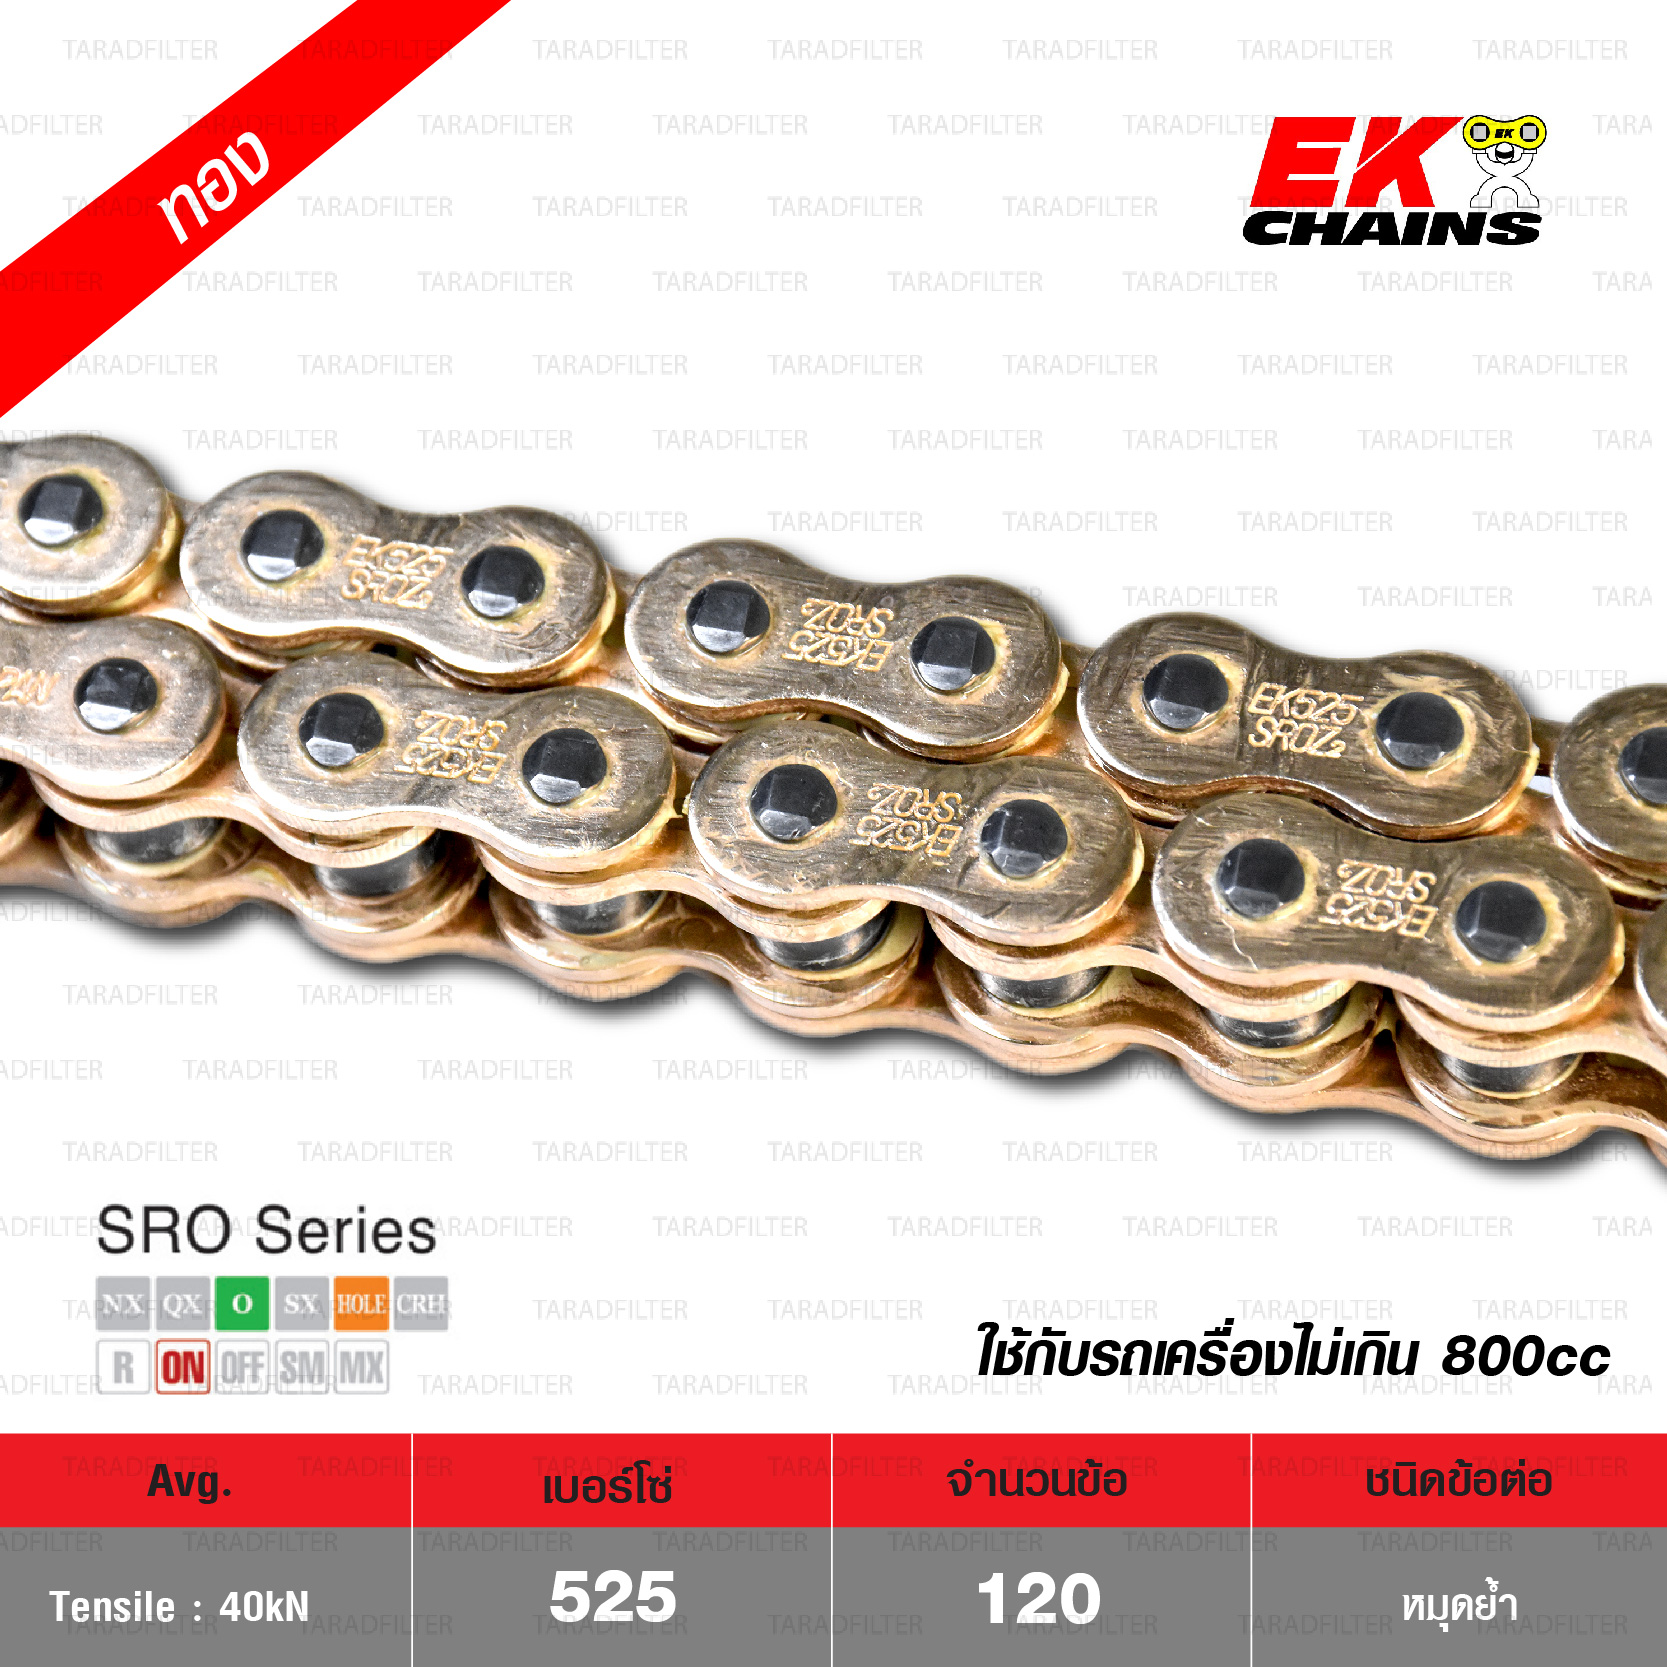 EK โซ่มอเตอร์ไซค์ บิ๊กไบค์ เบอร์ 525 O-ring รุ่น SRO SERIES สีทอง 120 ข้อ ข้อต่อแบบหมุดย้ำ [ 525-120 SROZ2 GOLD ]